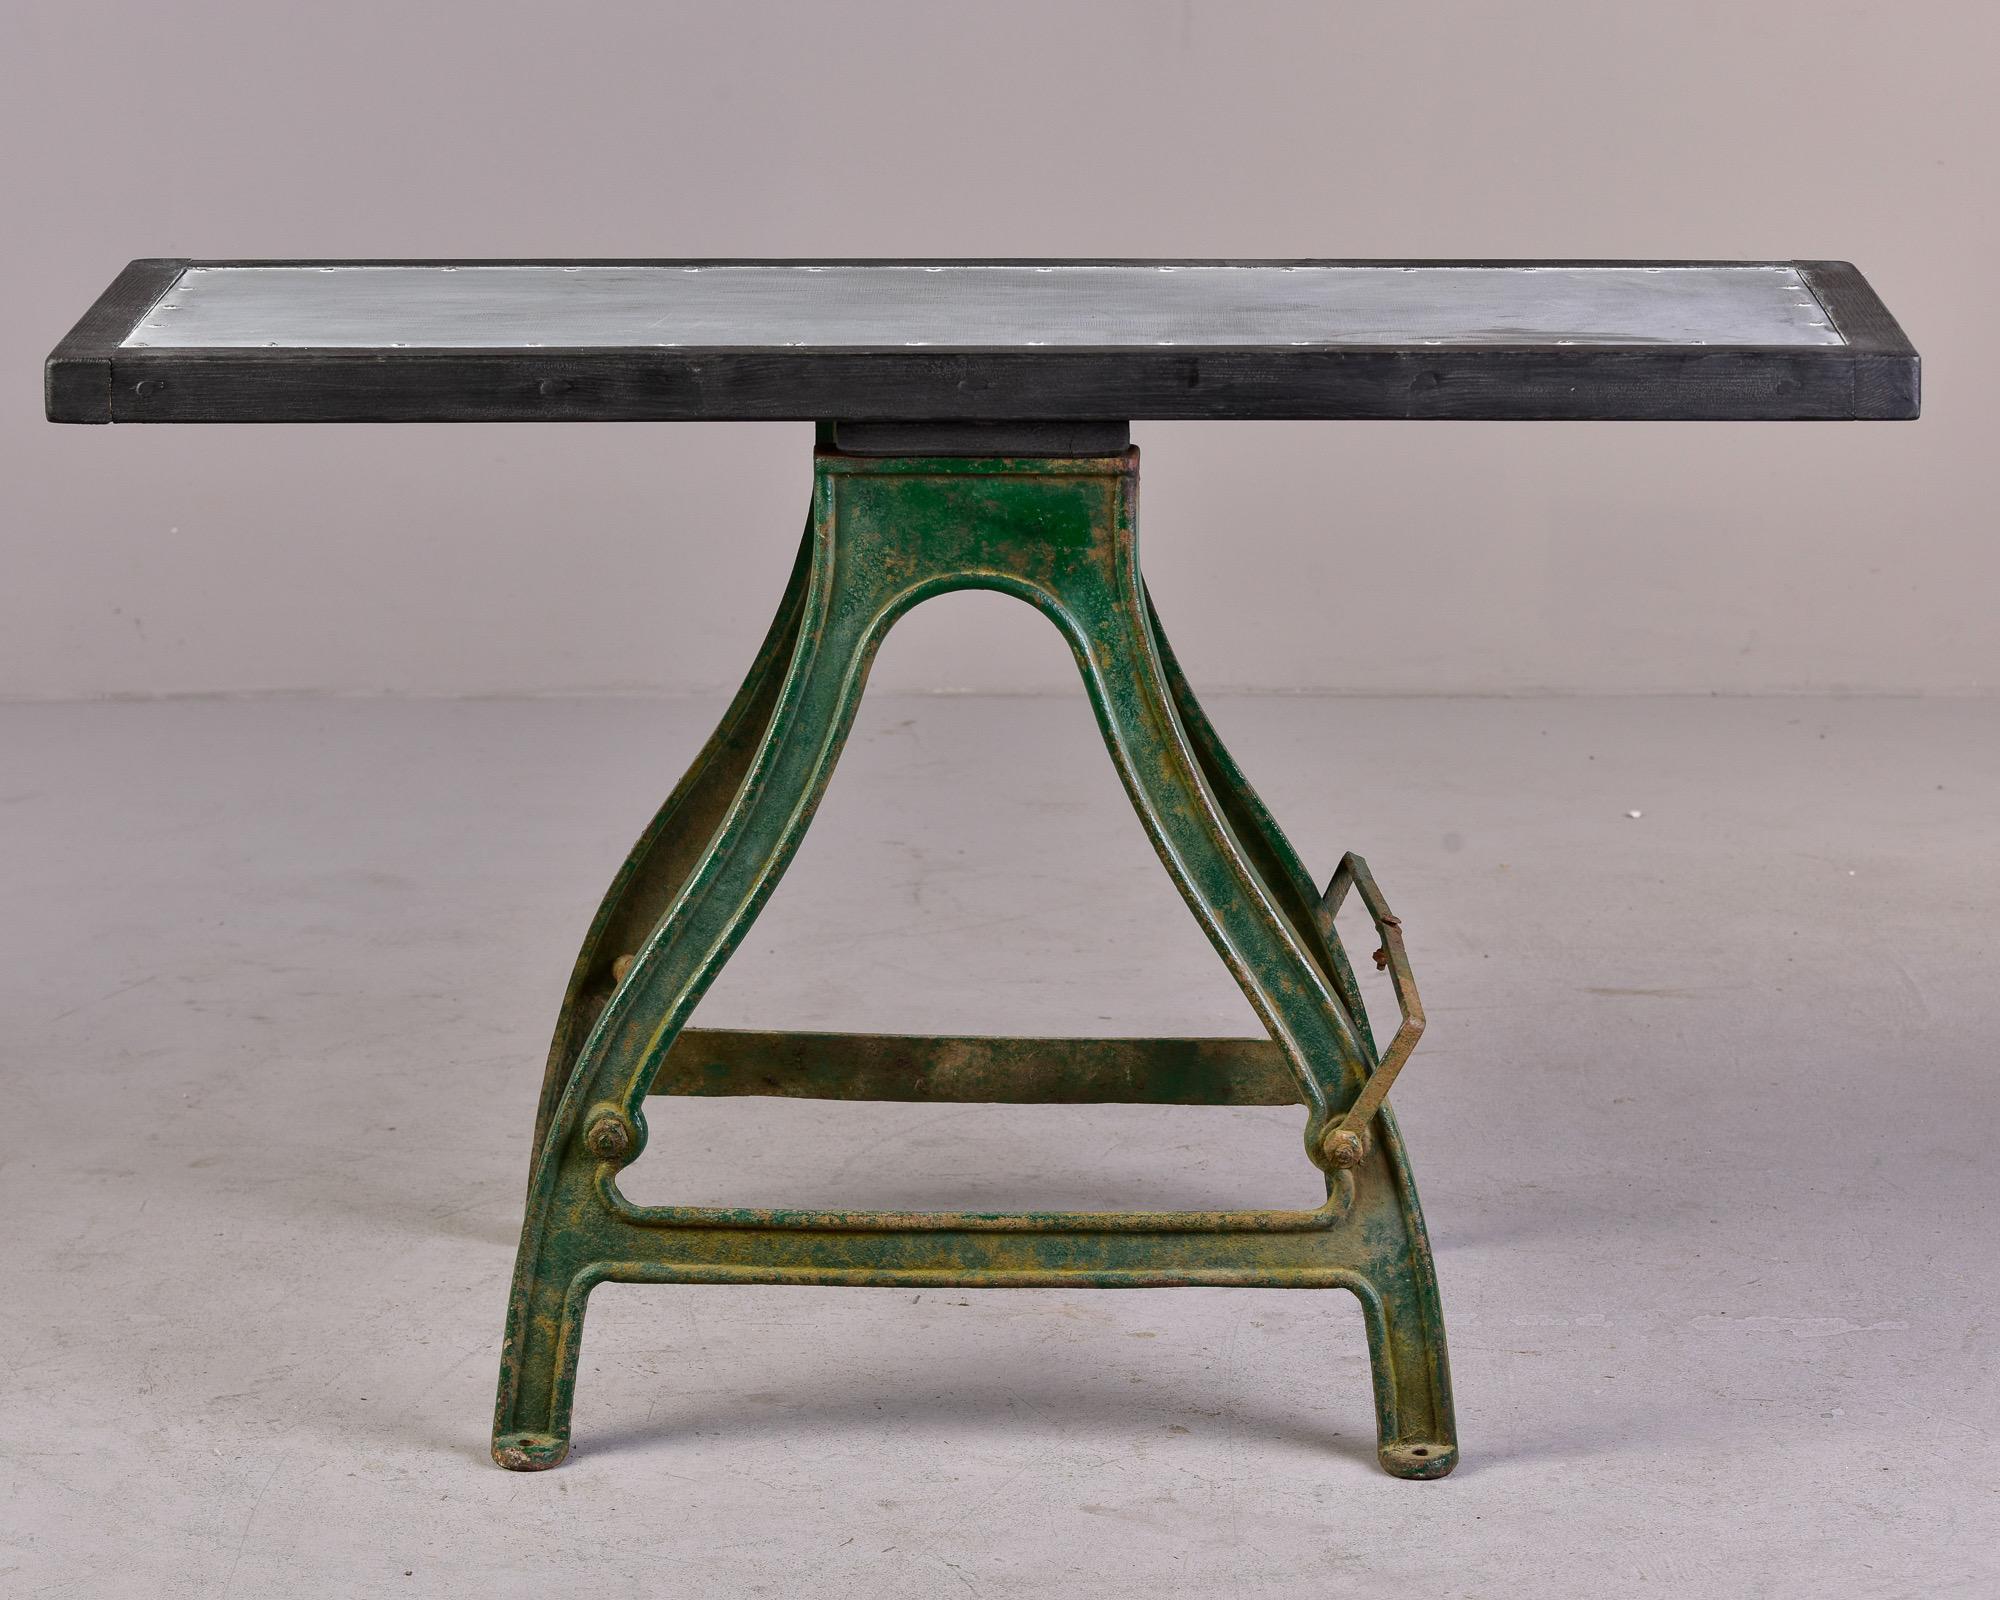 Trouvée en Angleterre, cette table de travail industrielle des années 1880 a une lourde base en fer avec une peinture verte d'origine qui présente un peu de rouille et de patine. Le bois neuf et le plateau de table recouvert de zinc en font une